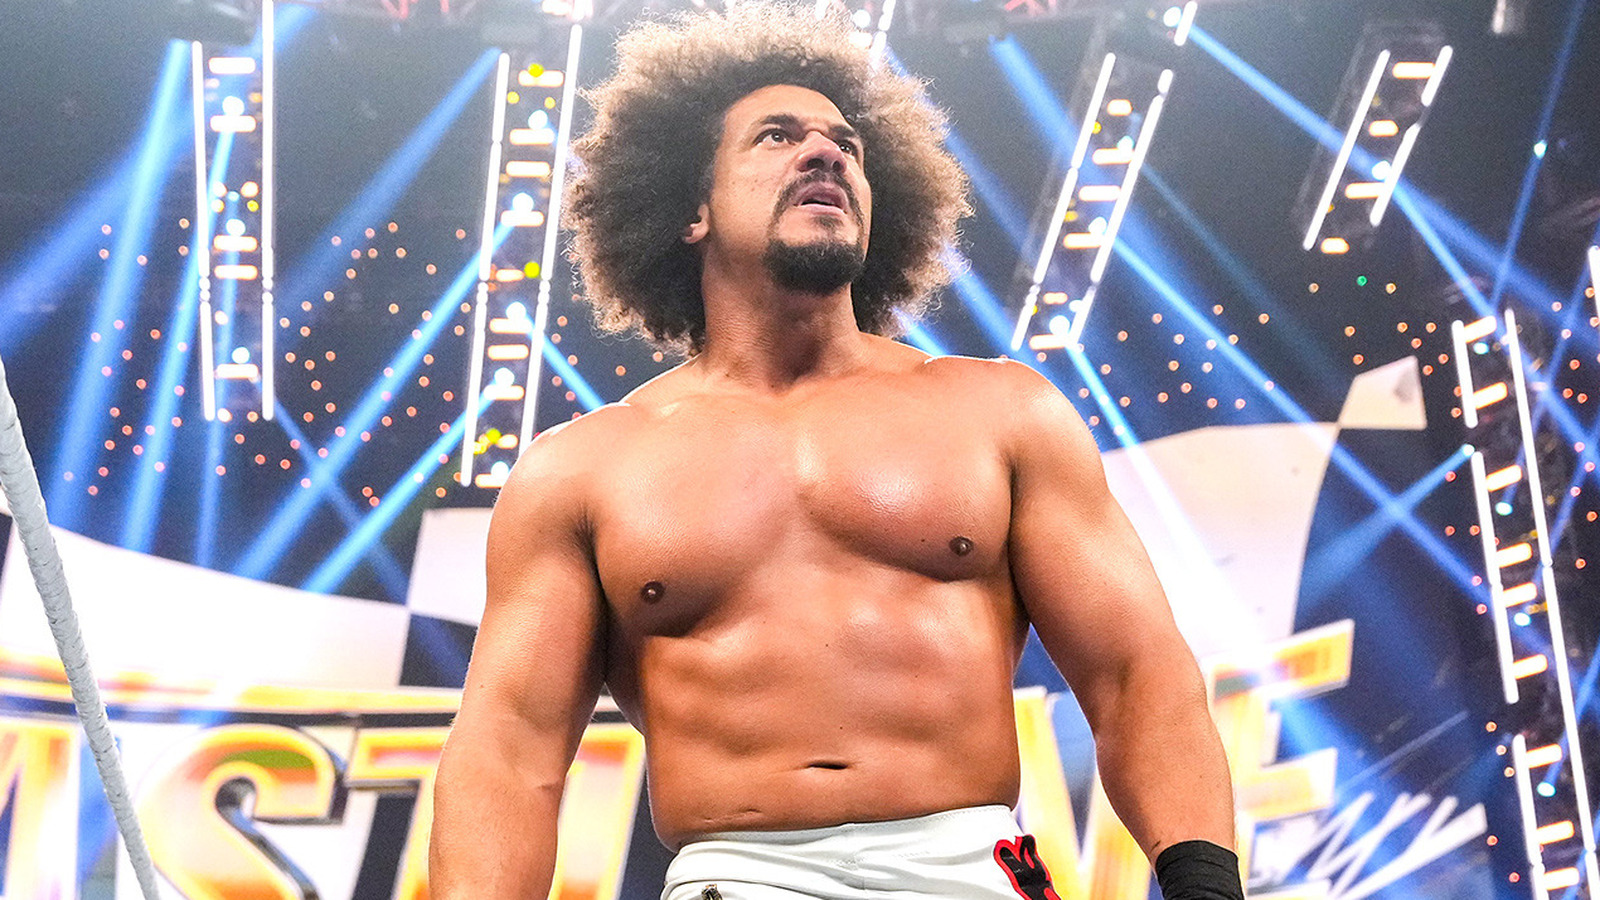 La estrella de la WWE, Carlito, detalla qué maniobra final lo lastimó más